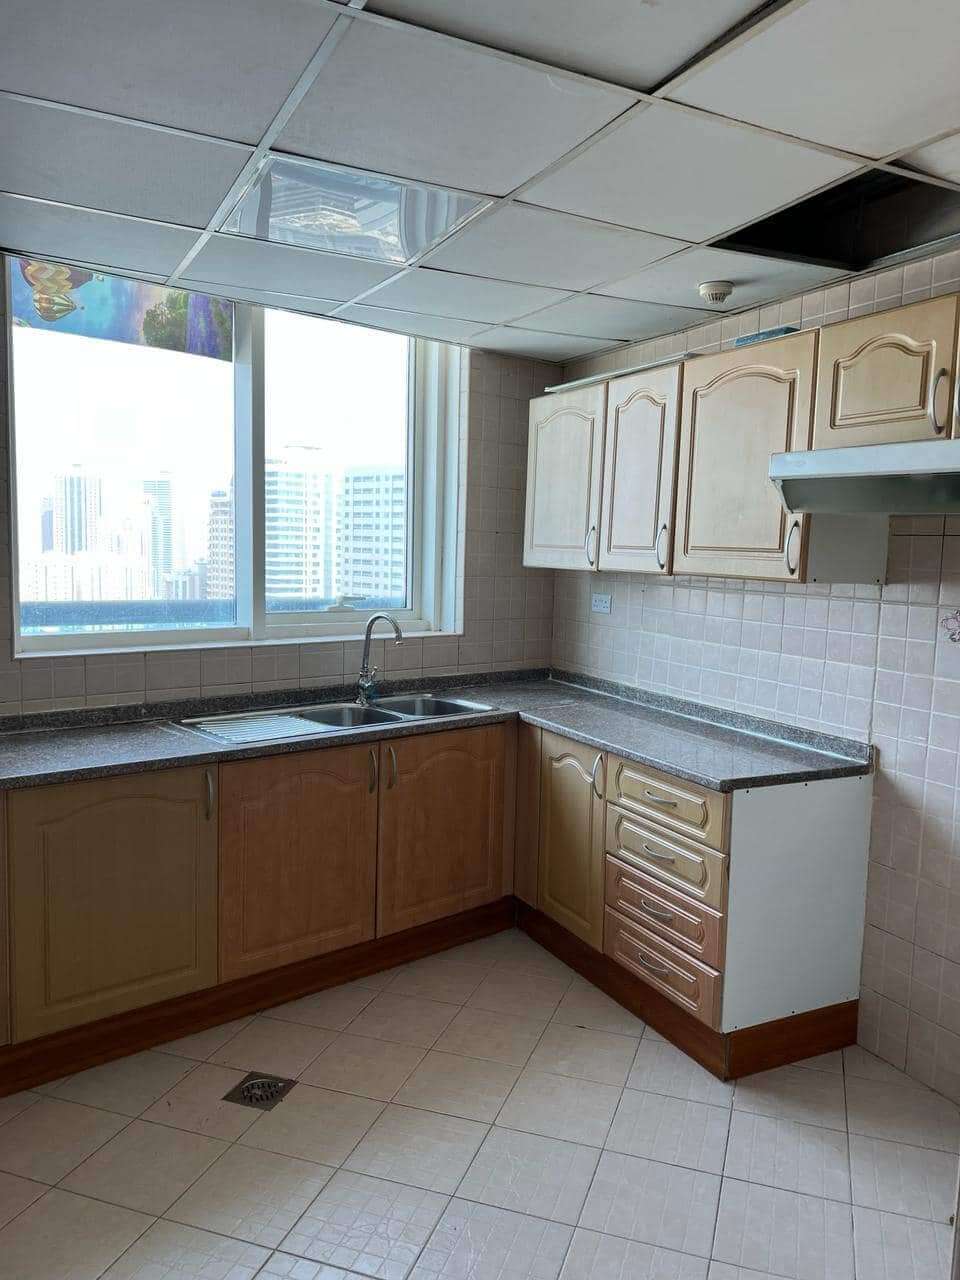 للبيع شقة في برج النور الشارقة | من المالك مباشرة || Apartment for sale in Sharjah | Directly from the owner